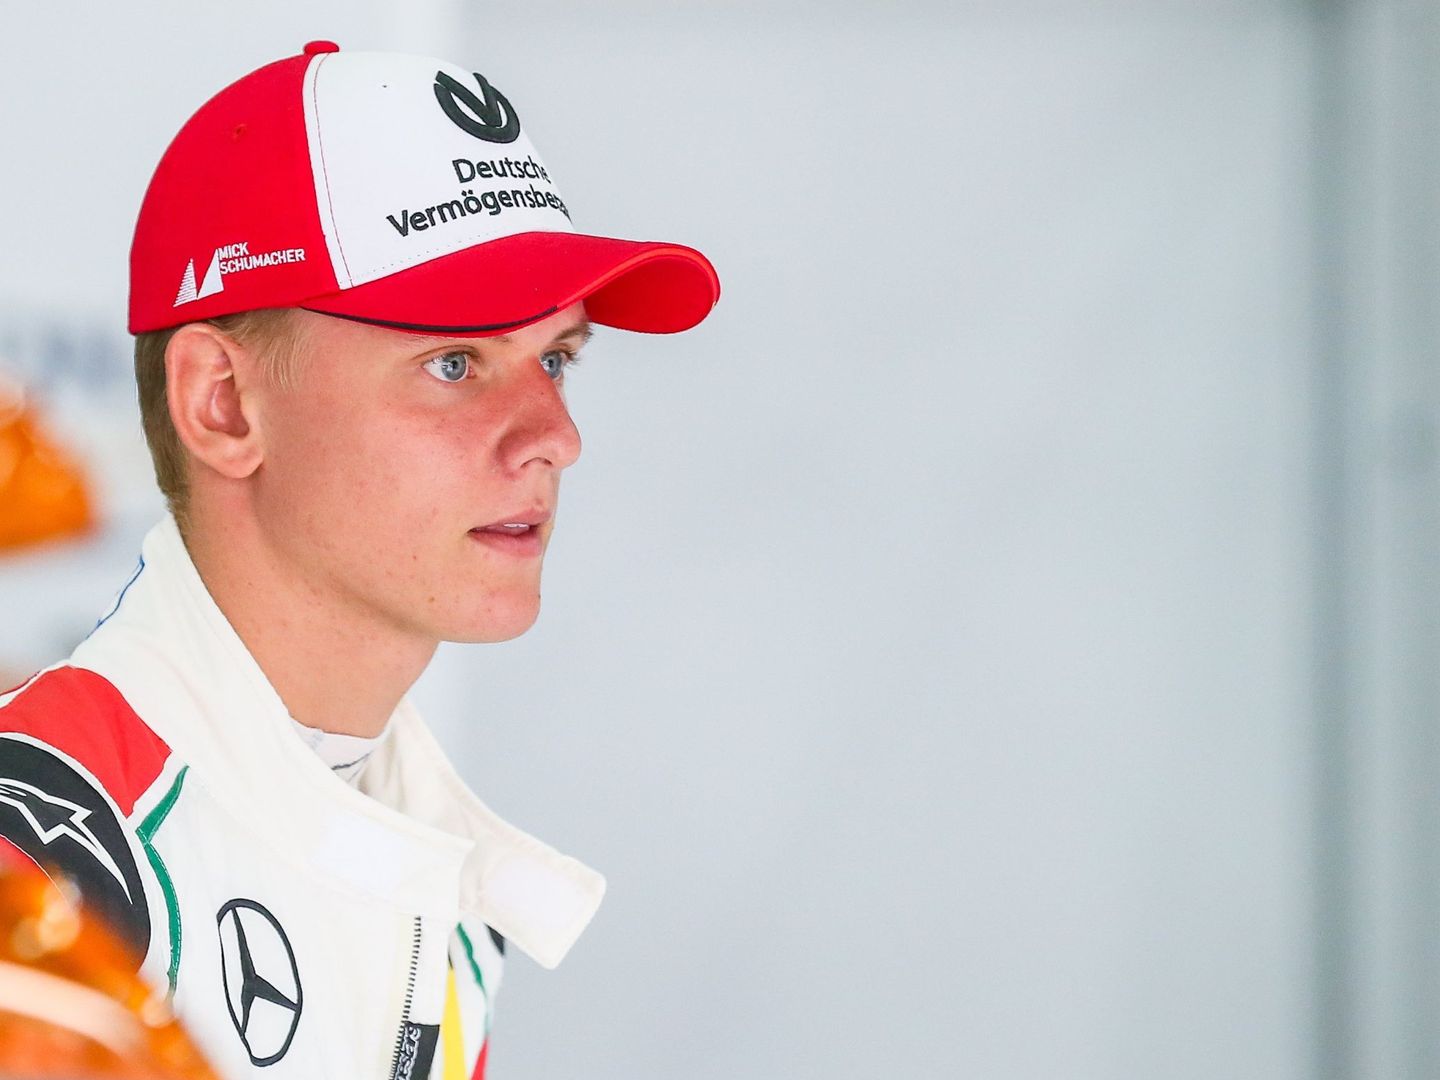 Mick Schumacher, hijo de Michael, ha competido este 2017 en la Fórmula 3 y disputará el GP de Macao en noviembre. (Noviembre)